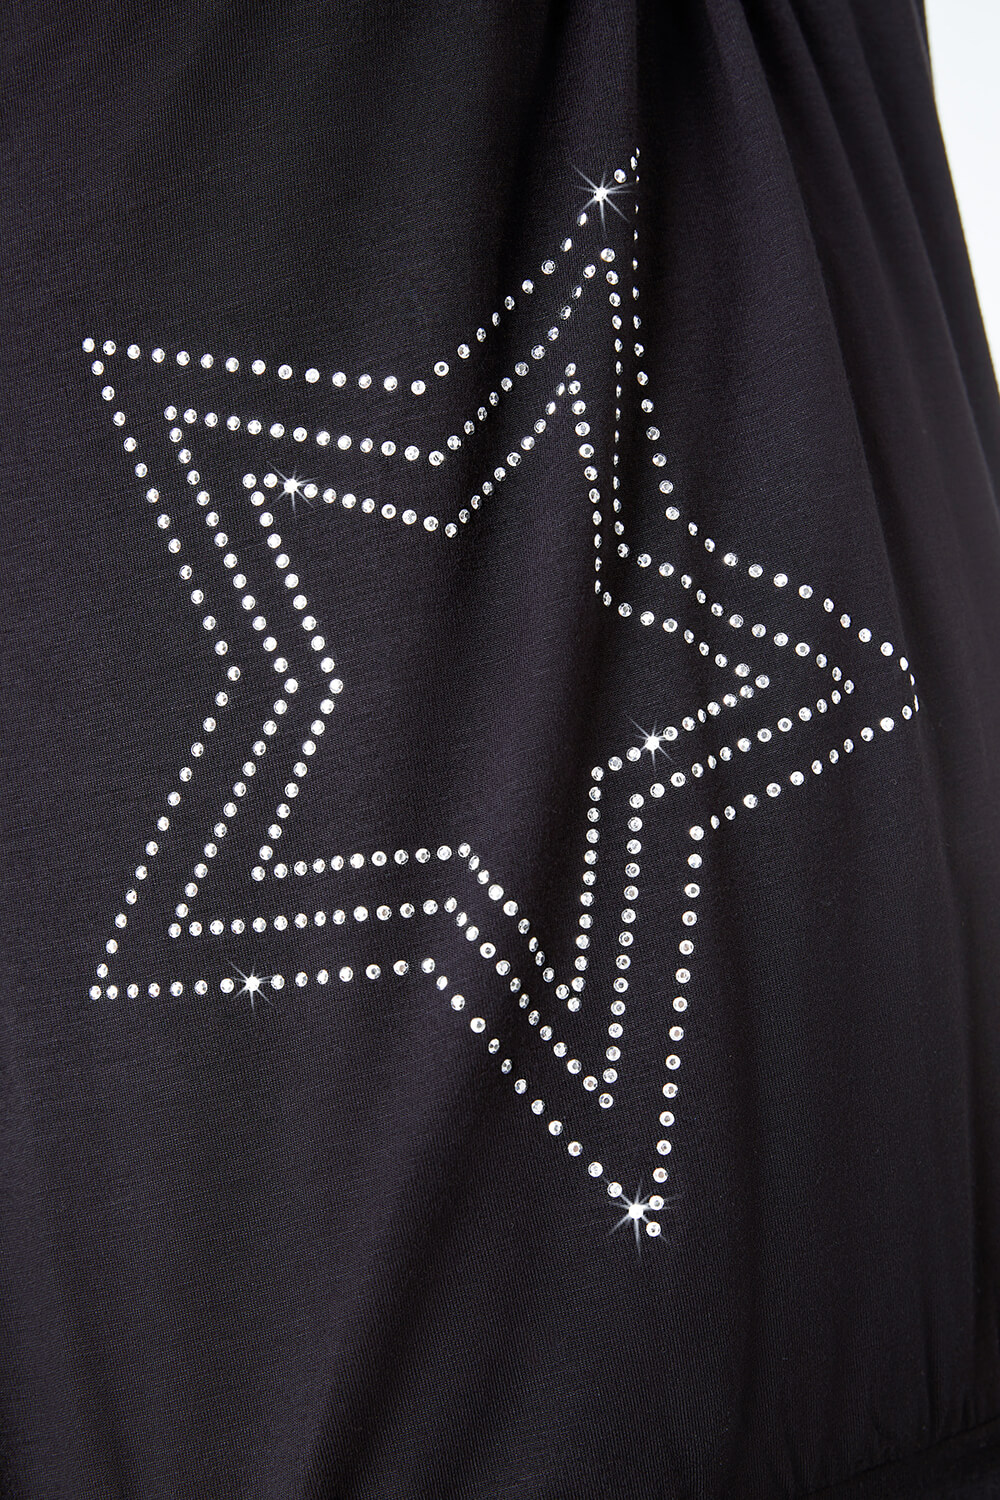 Black Star Embellished Blouson Jersey Top, Image 4 of 5